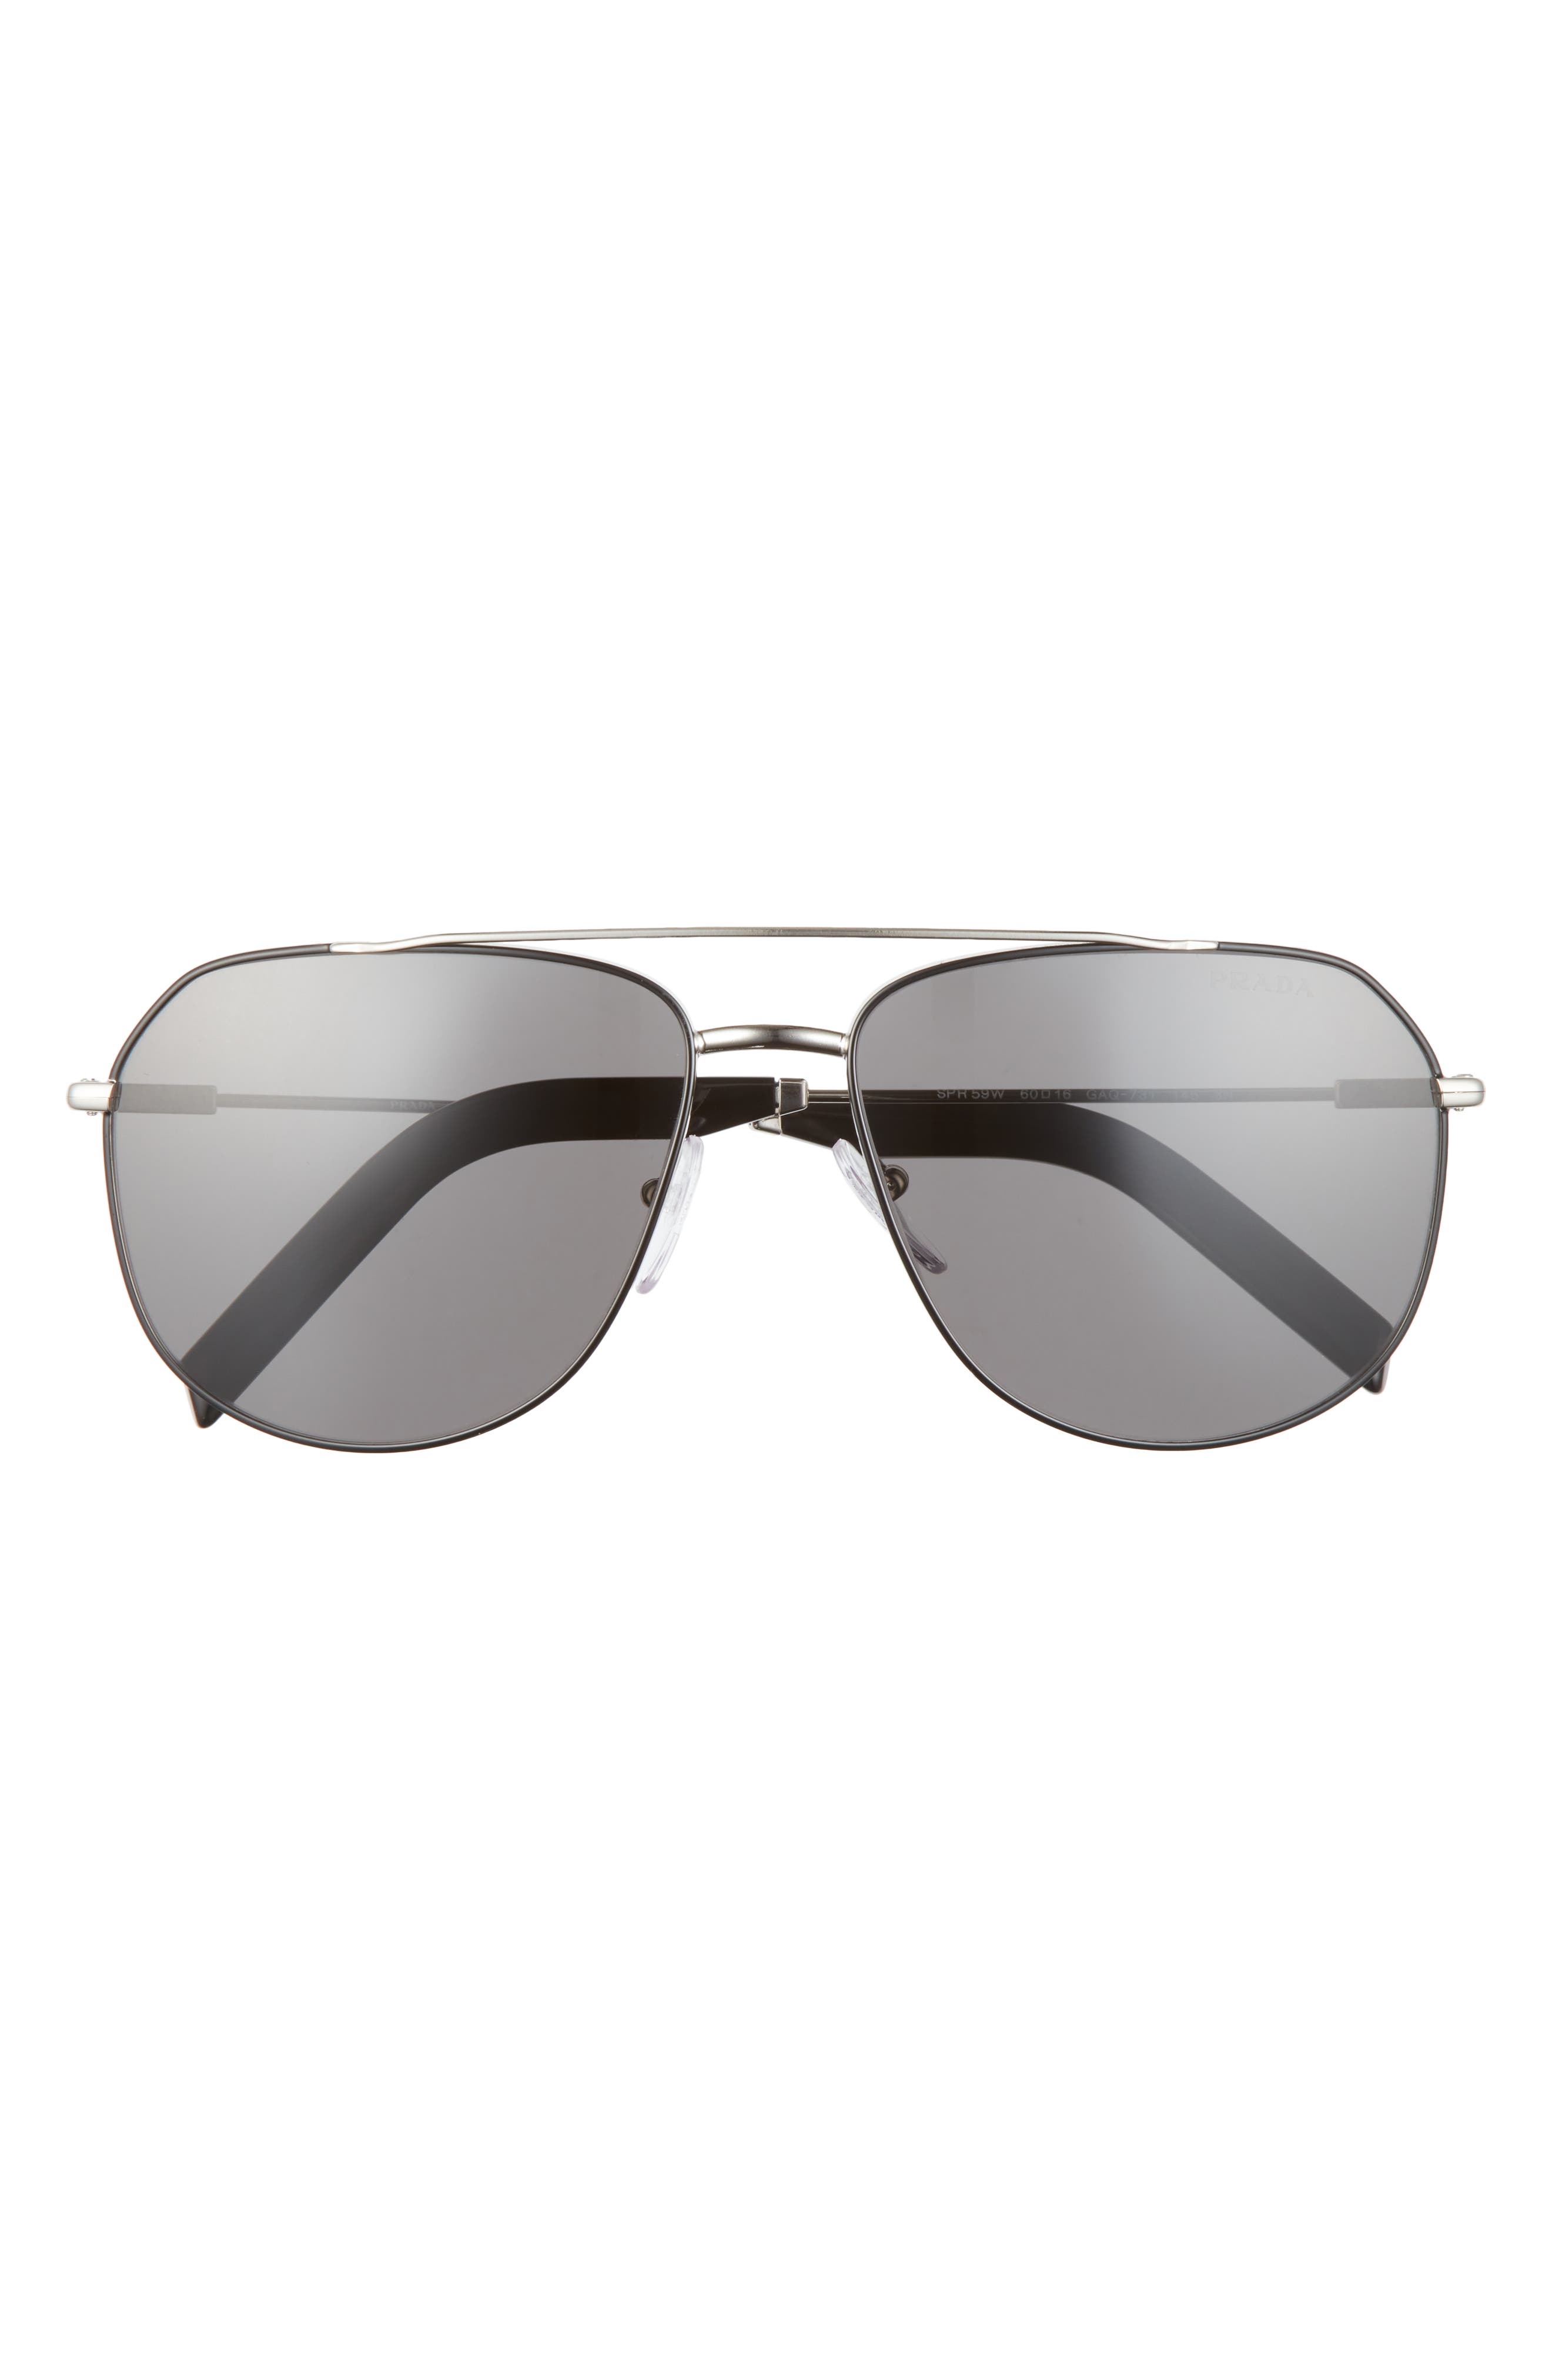 Prada 60mm Aviator Sunglasses in Silver/black/Dark Grey at Nordstrom